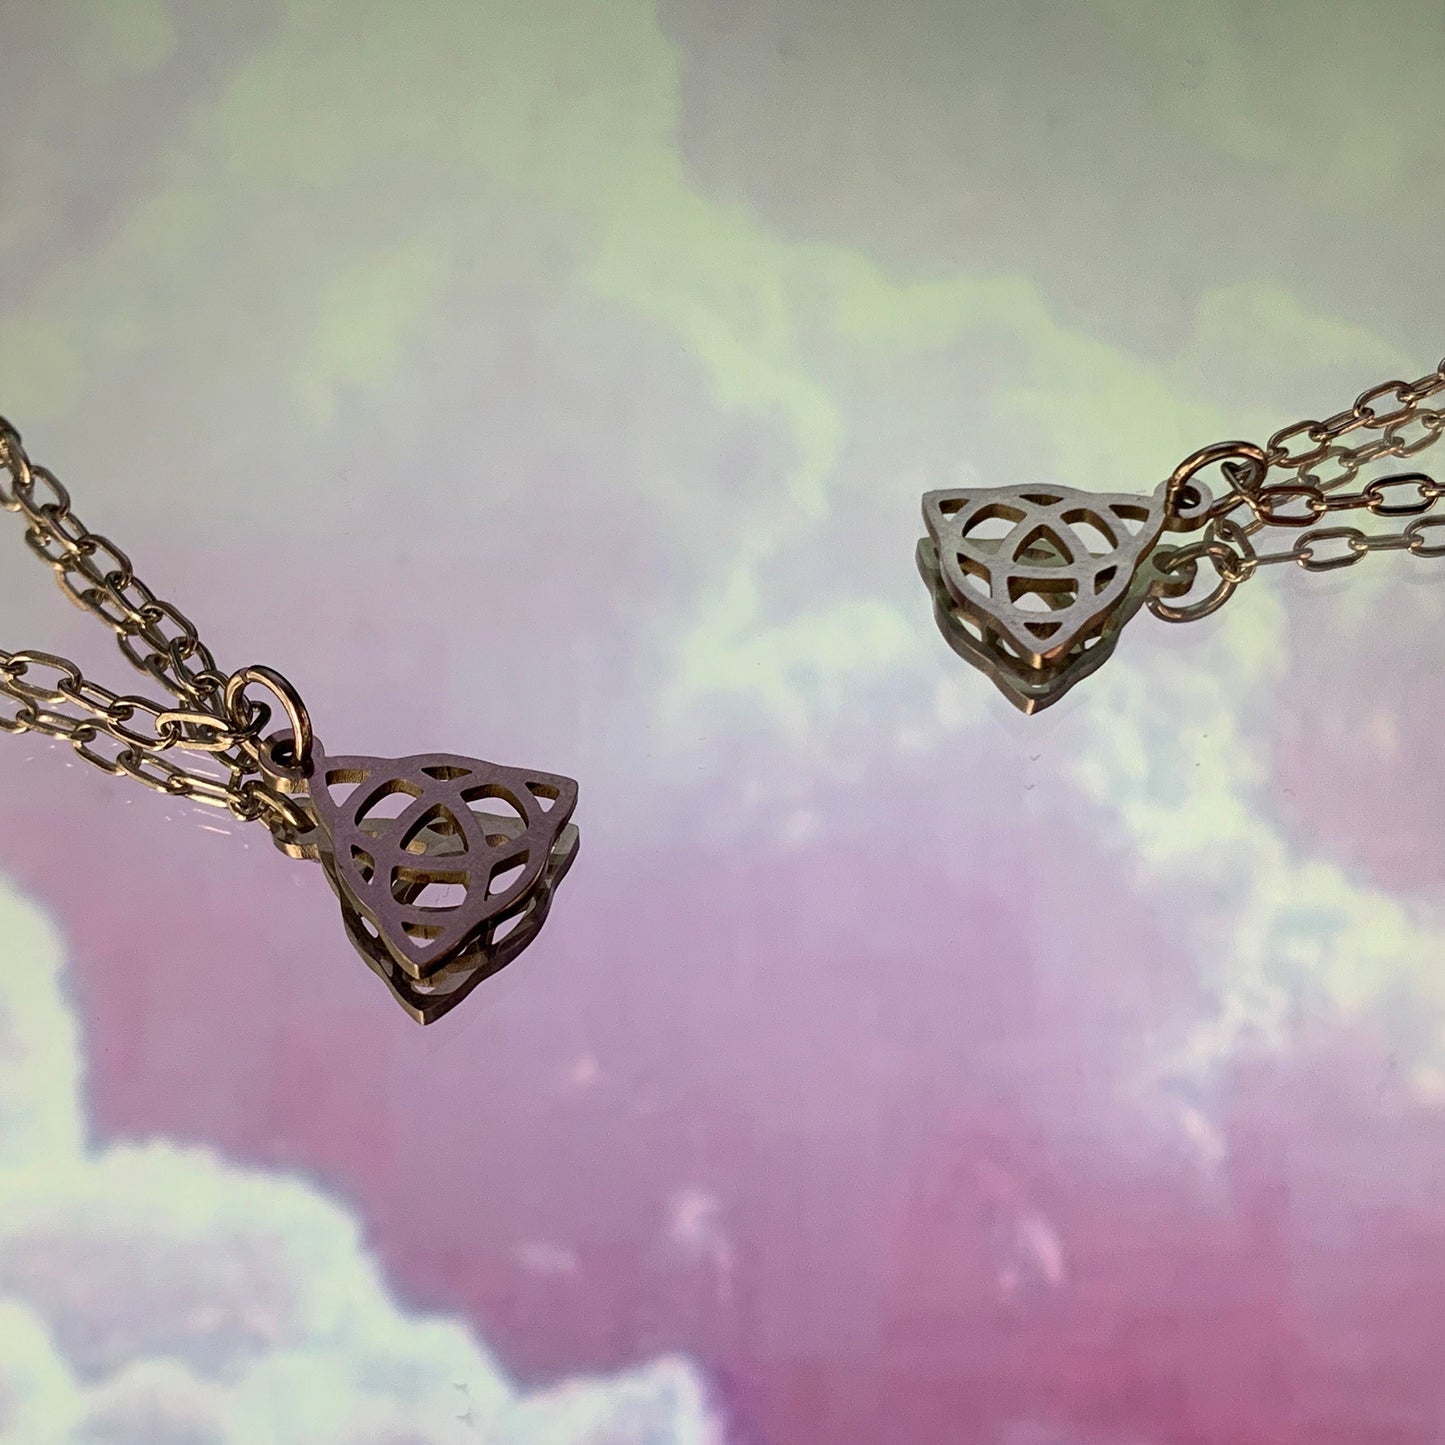 Triquetra Charm Chain Necklace - Lxyclr Authentic